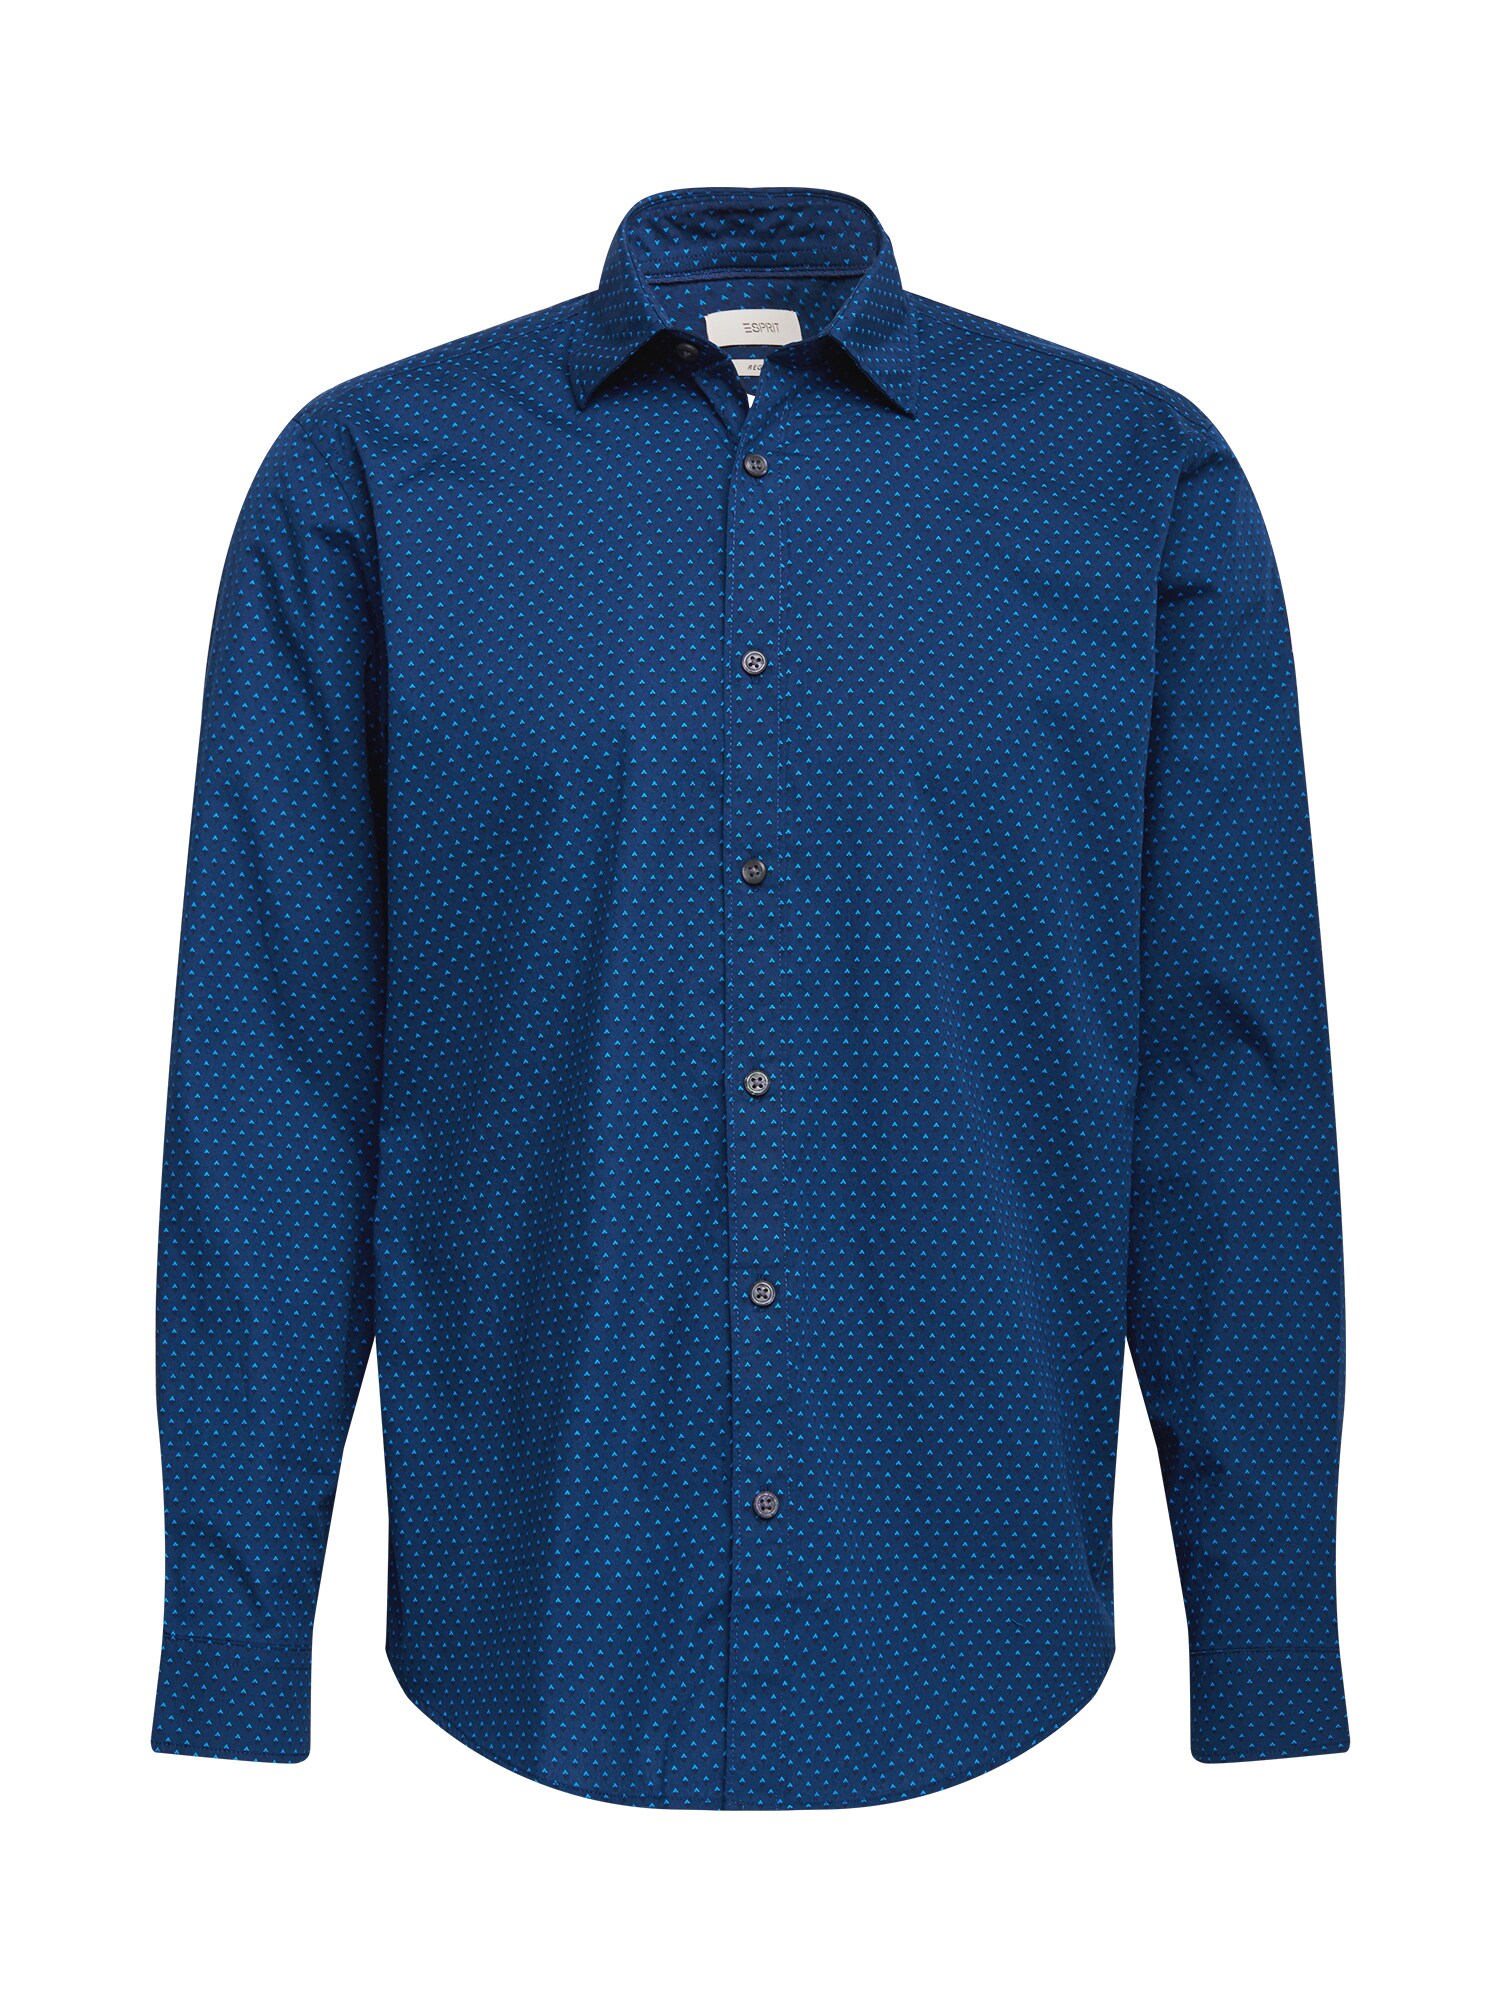 ESPRIT Dalykiniai marškiniai  tamsiai mėlyna / šviesiai mėlyna